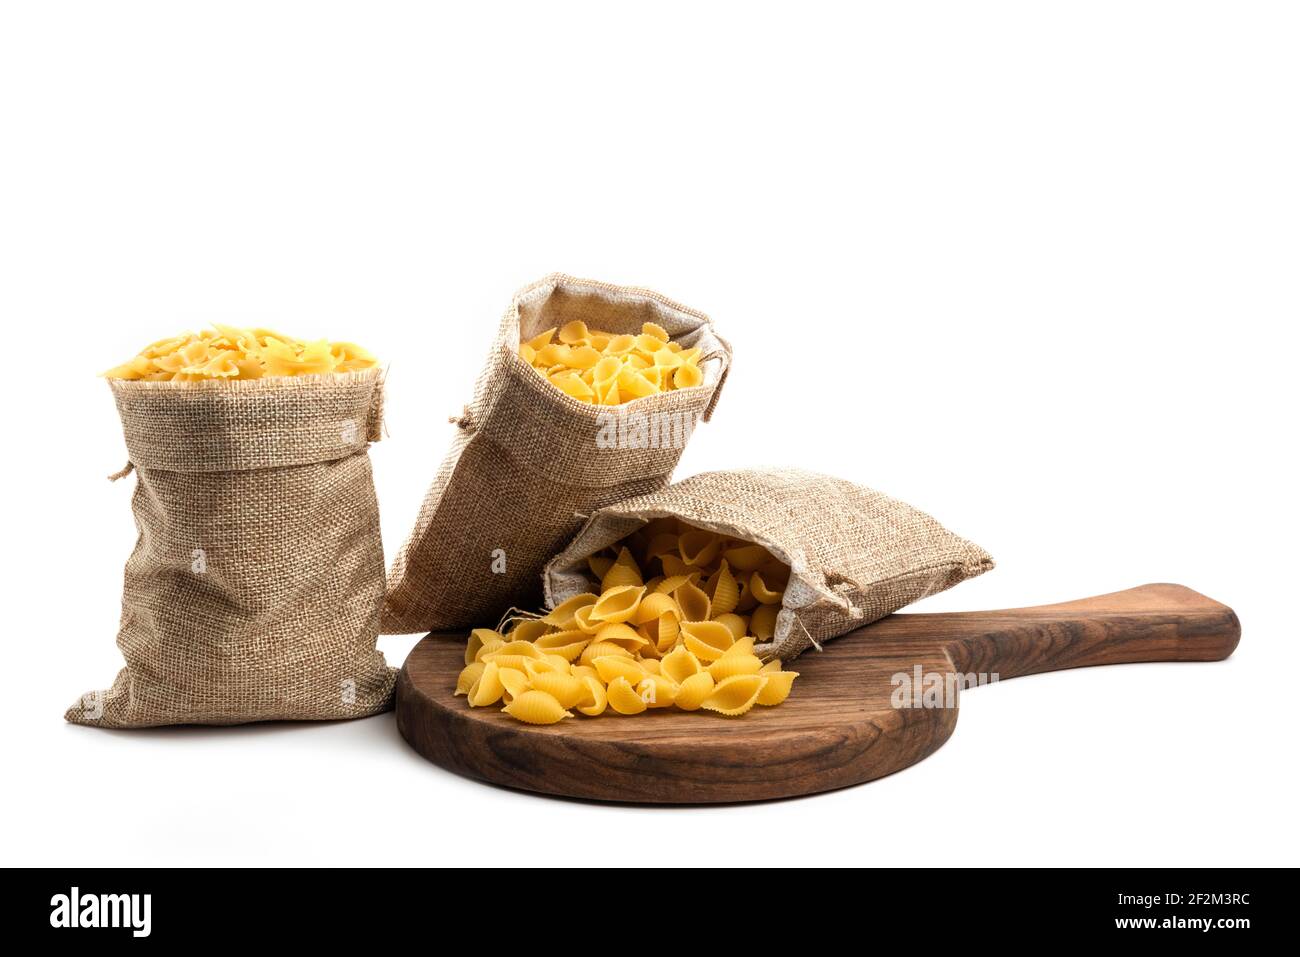 Conchiglie rigate Pasta oder Muschelmakkaroni in Sack isoliert Stockfoto